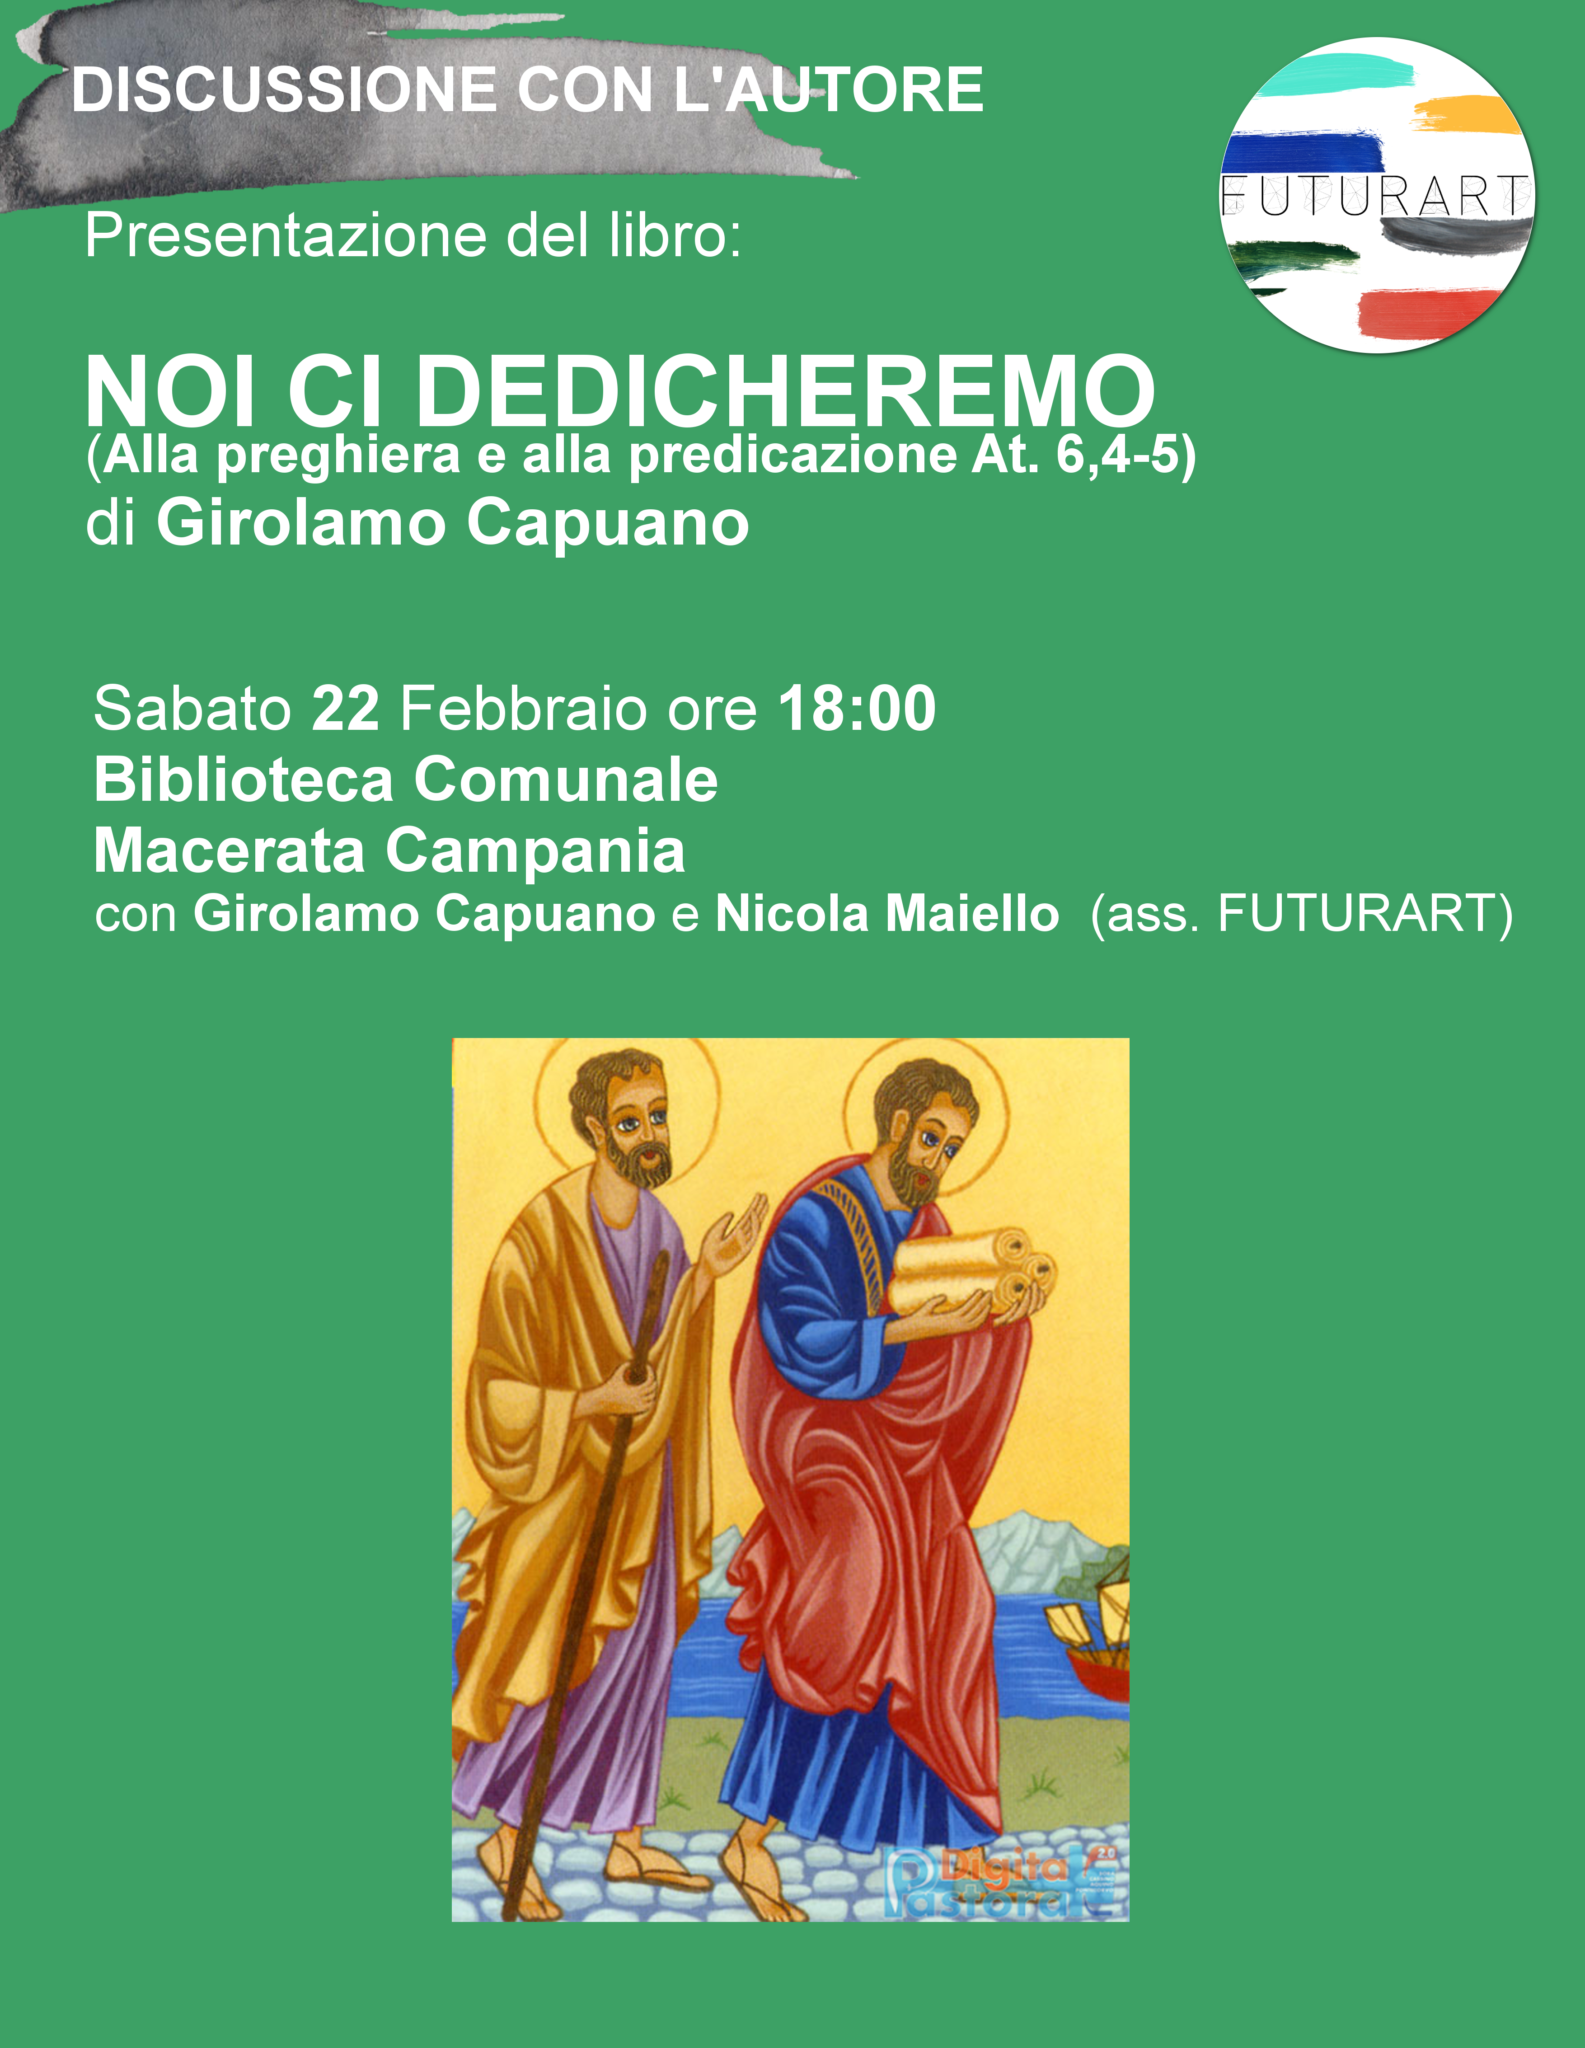 A Macerata Campania presentazione del libro ‘Noi ci dedicheremo’ di Don Girolamo Capuano